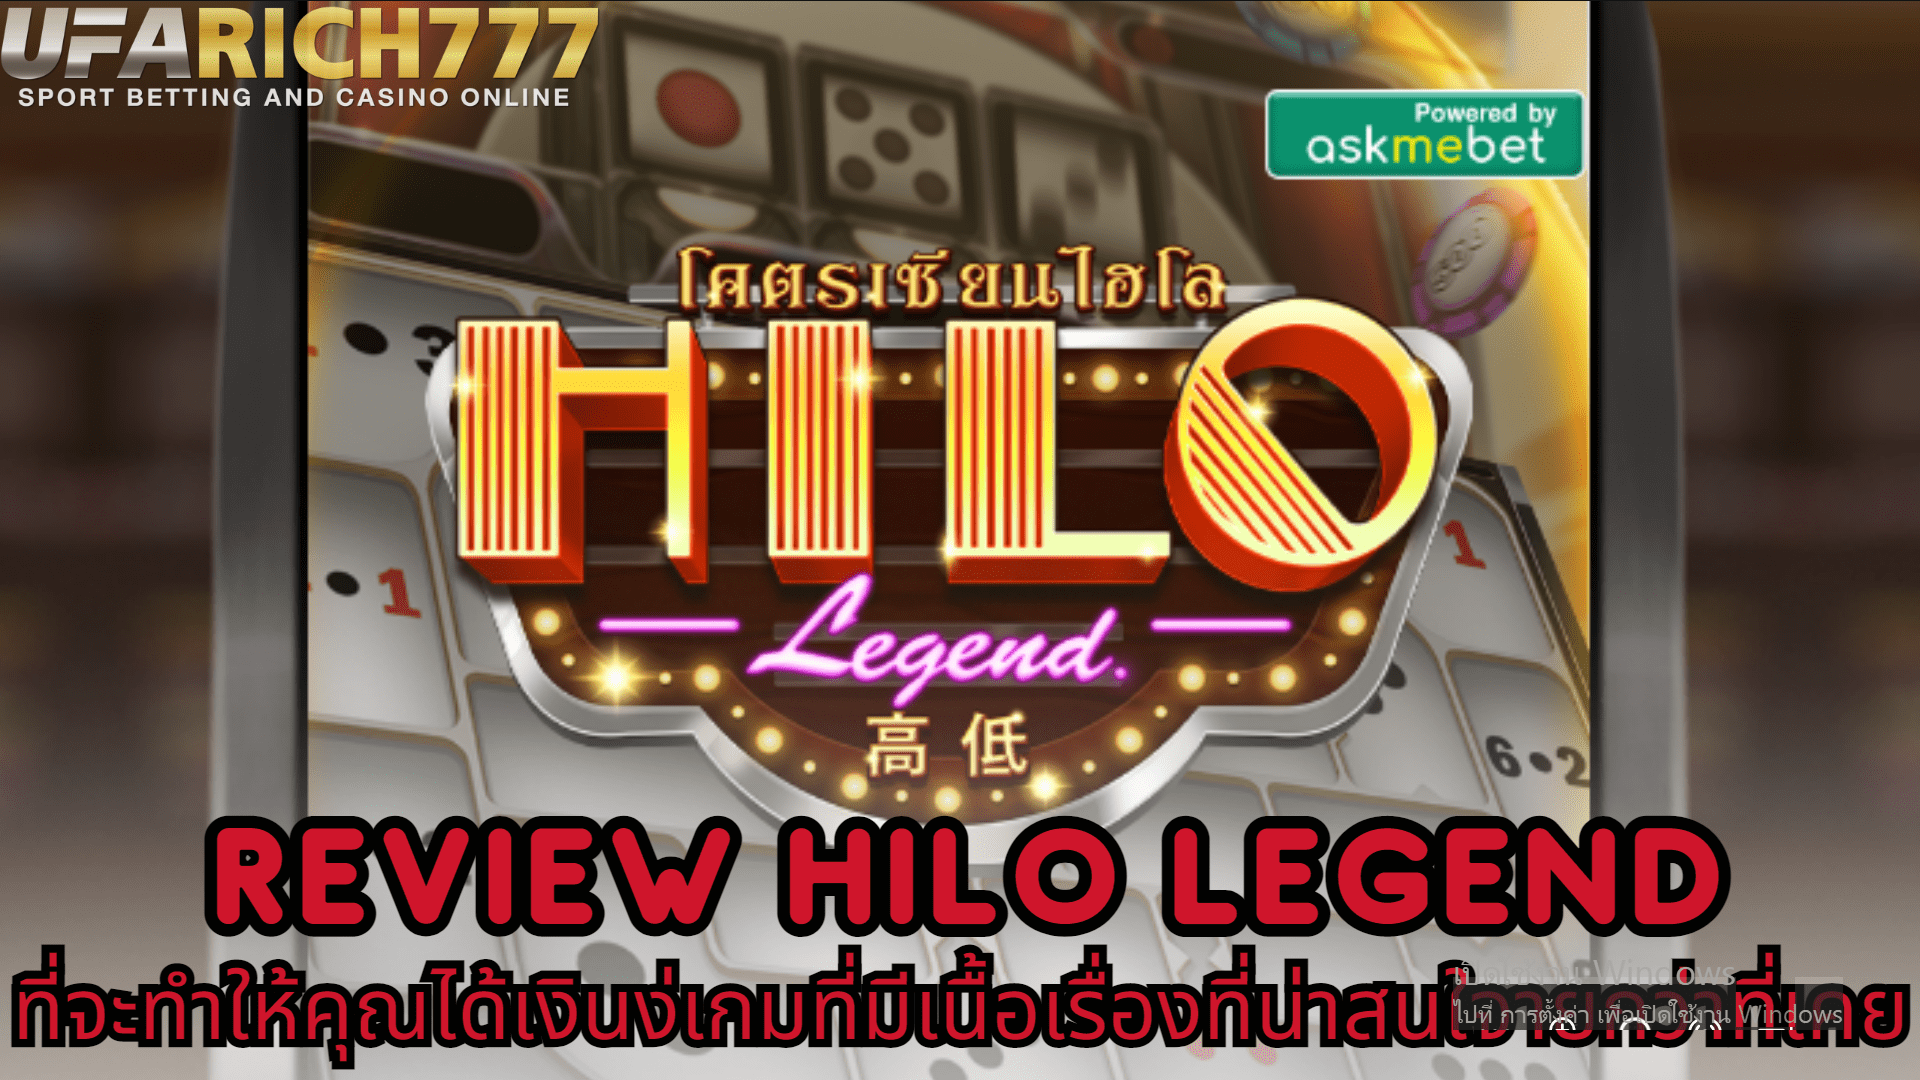 Review Hilo Legend